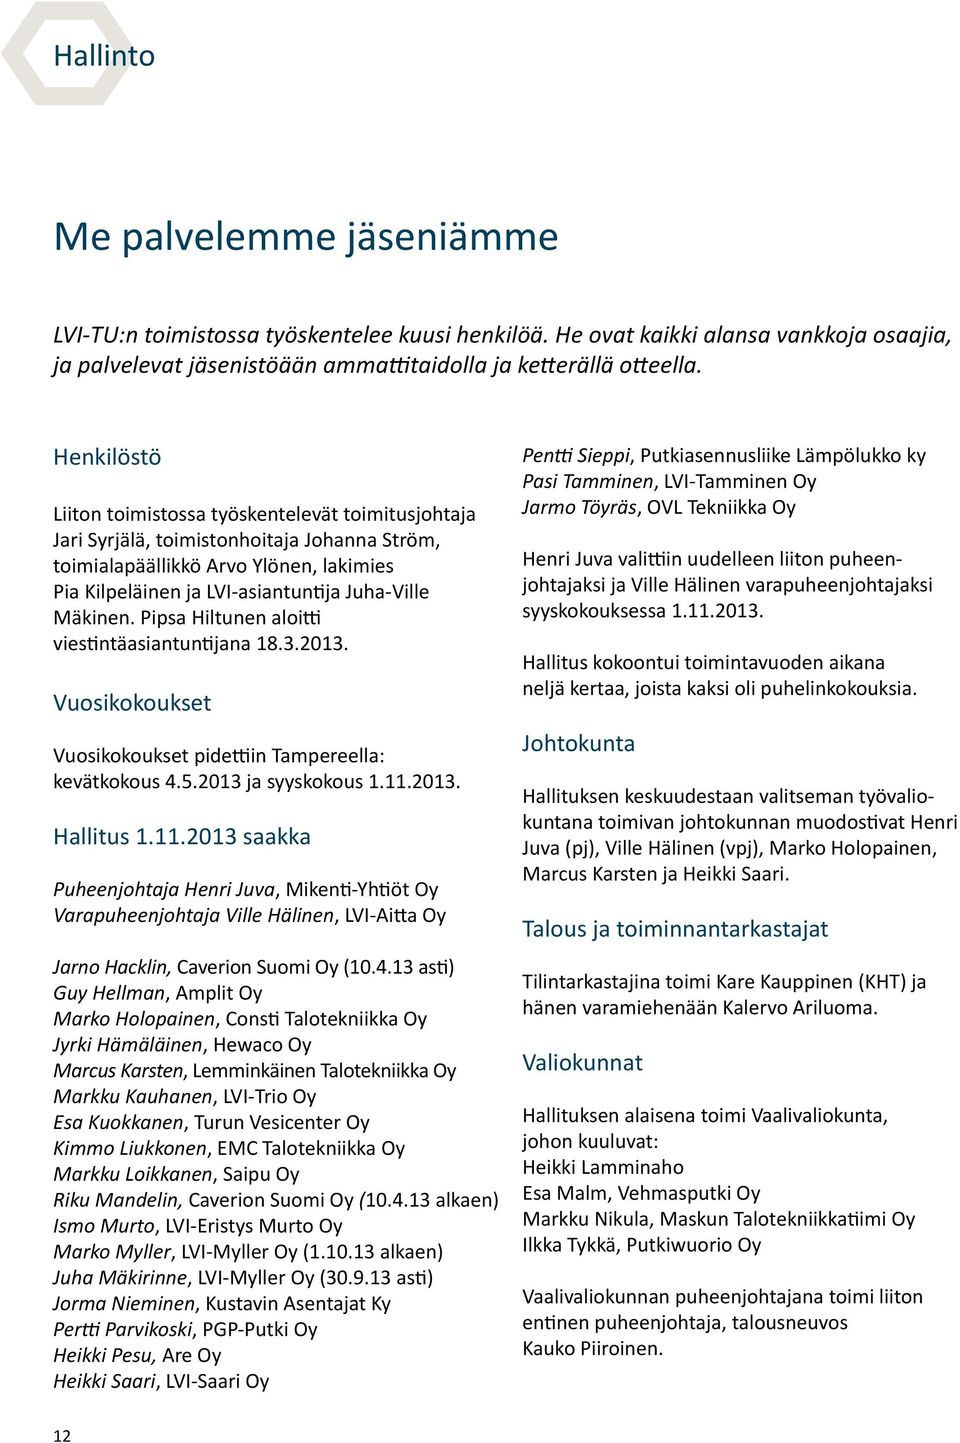 Mäkinen. Pipsa Hiltunen aloitti viestintäasiantuntijana 18.3.2013. Vuosikokoukset Vuosikokoukset pidettiin Tampereella: kevätkokous 4.5.2013 ja syyskokous 1.11.